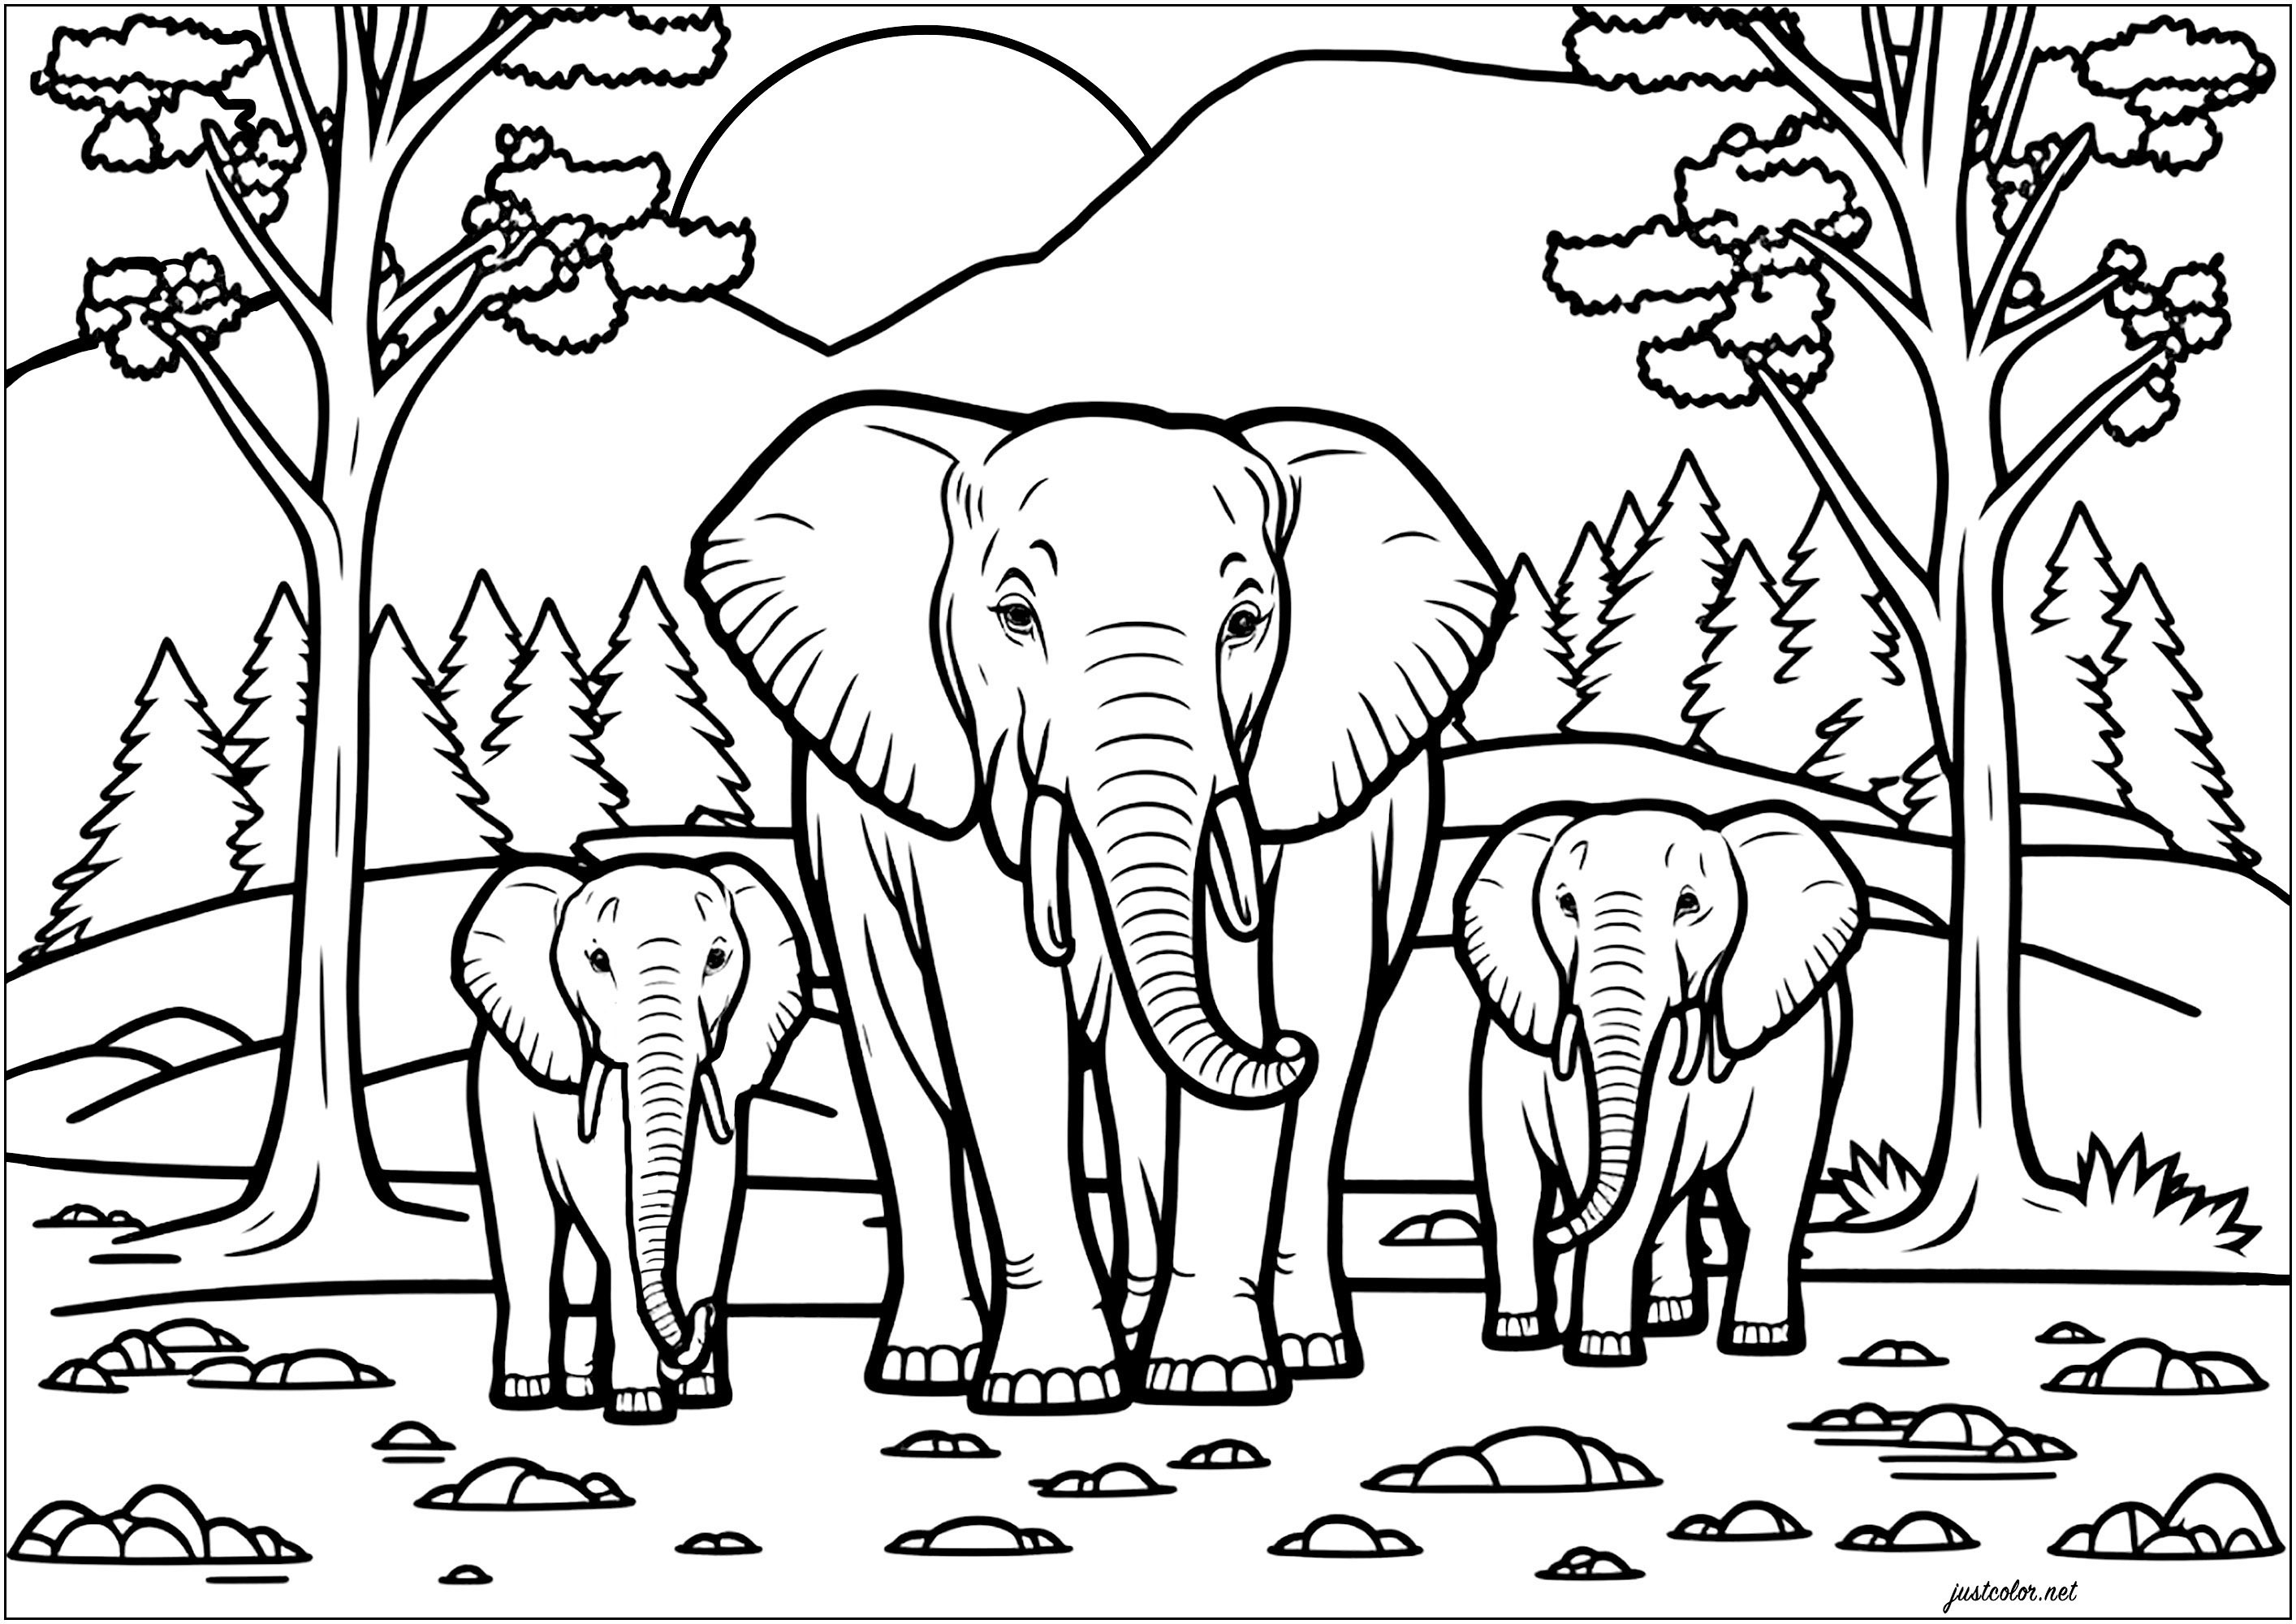 Famille d'éléphant dans la savane. En arrière plan : de jolis arbres, et une montagne derrière laquelle on voit le soleil se lever, Artiste : IAsabelle